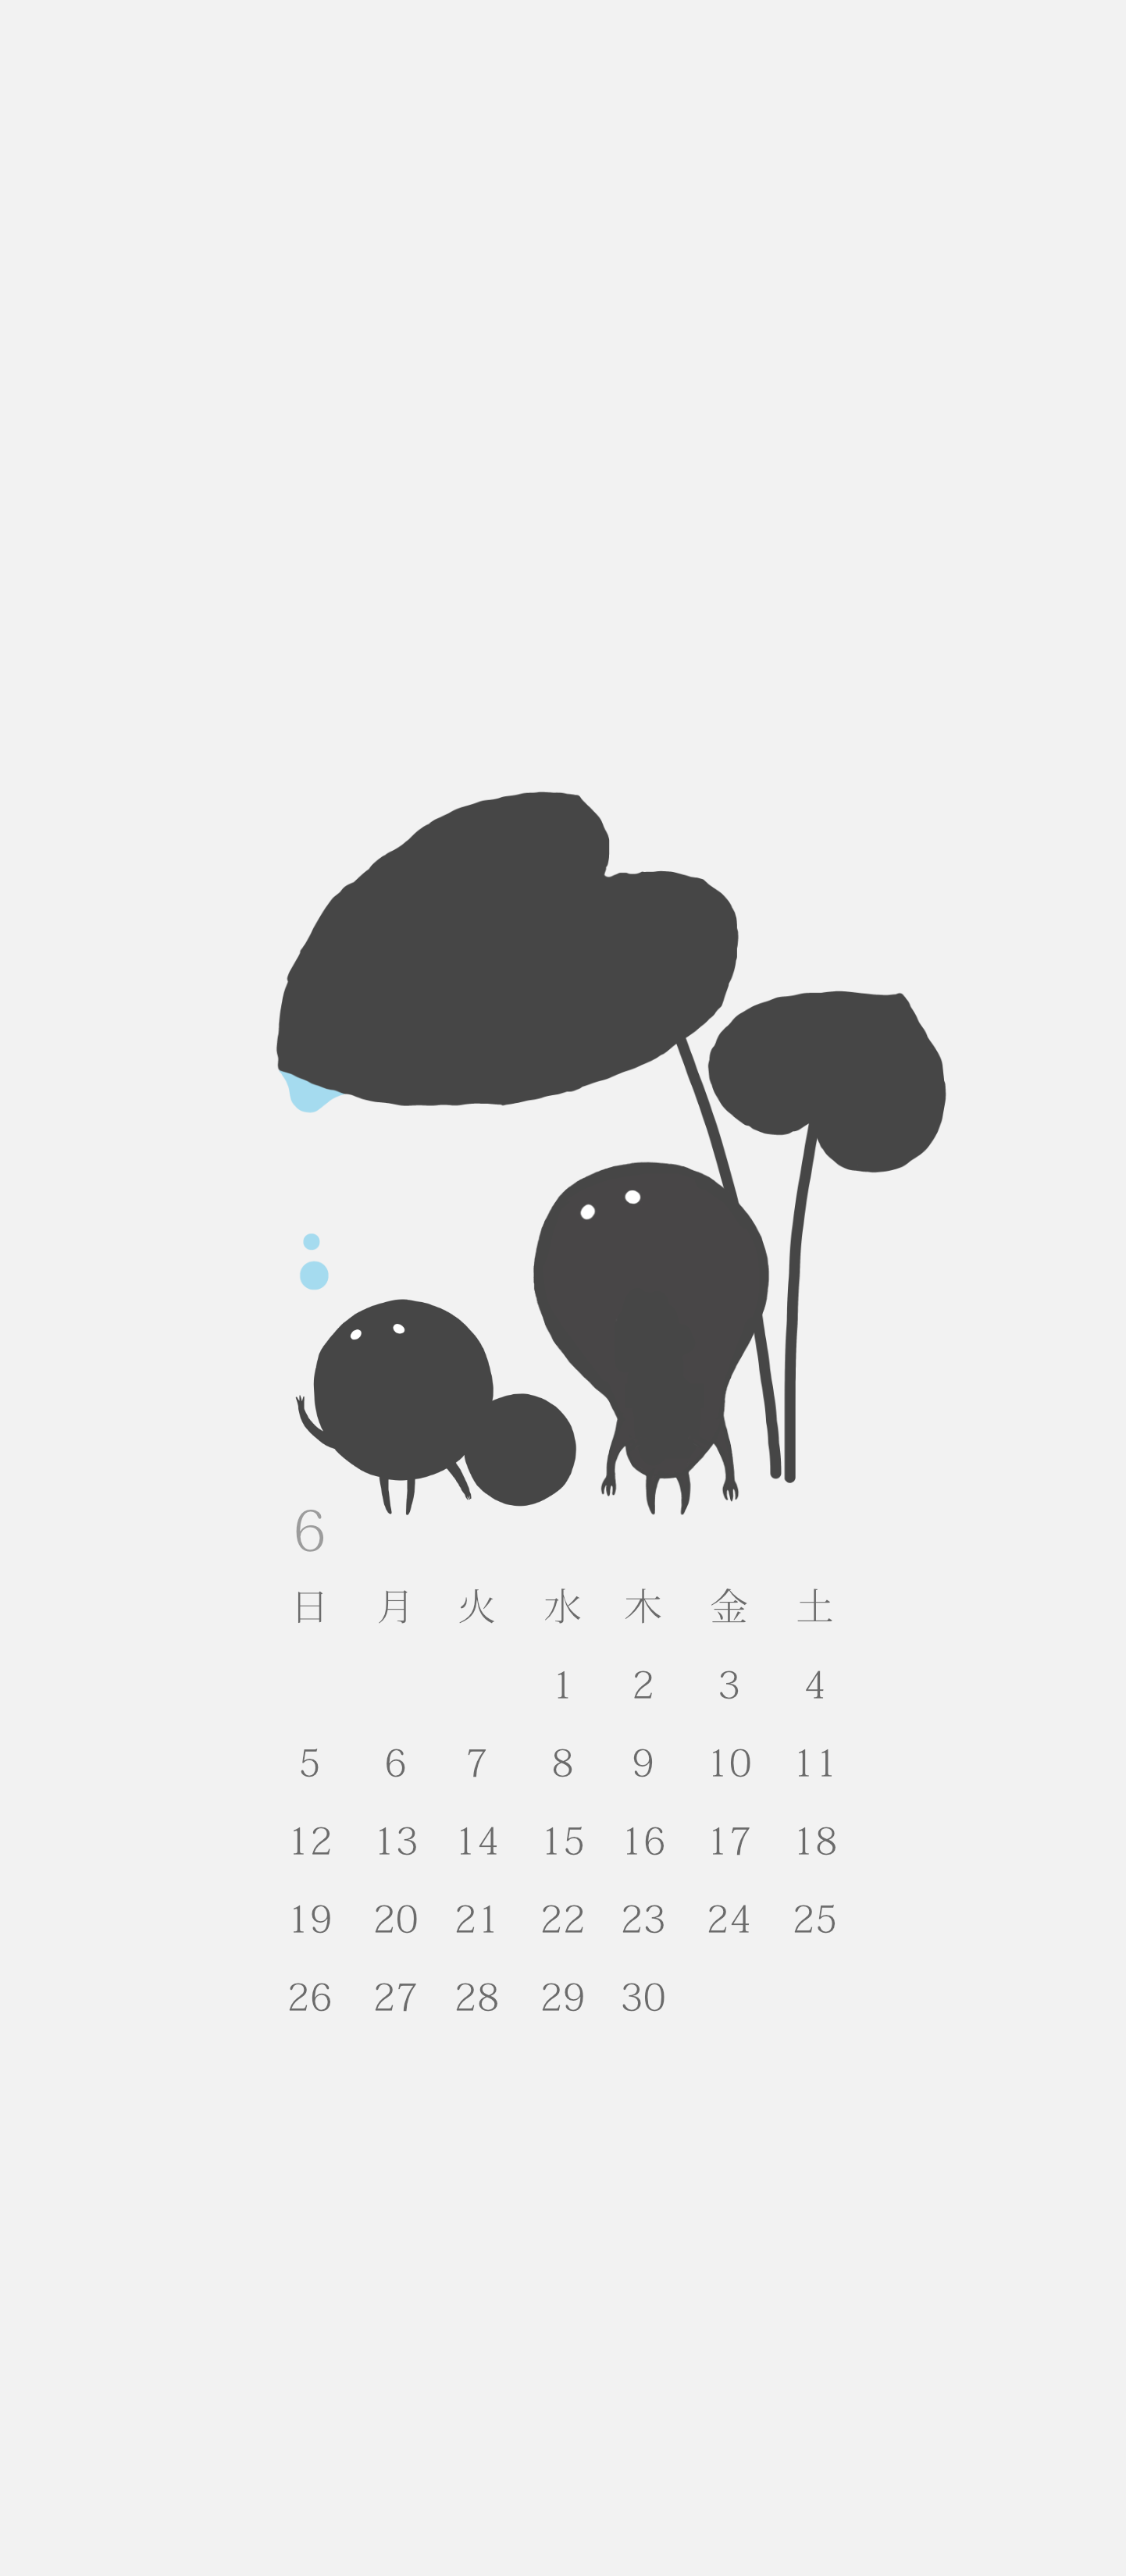 無料ロック画面カレンダー 「6月 雨宿り」